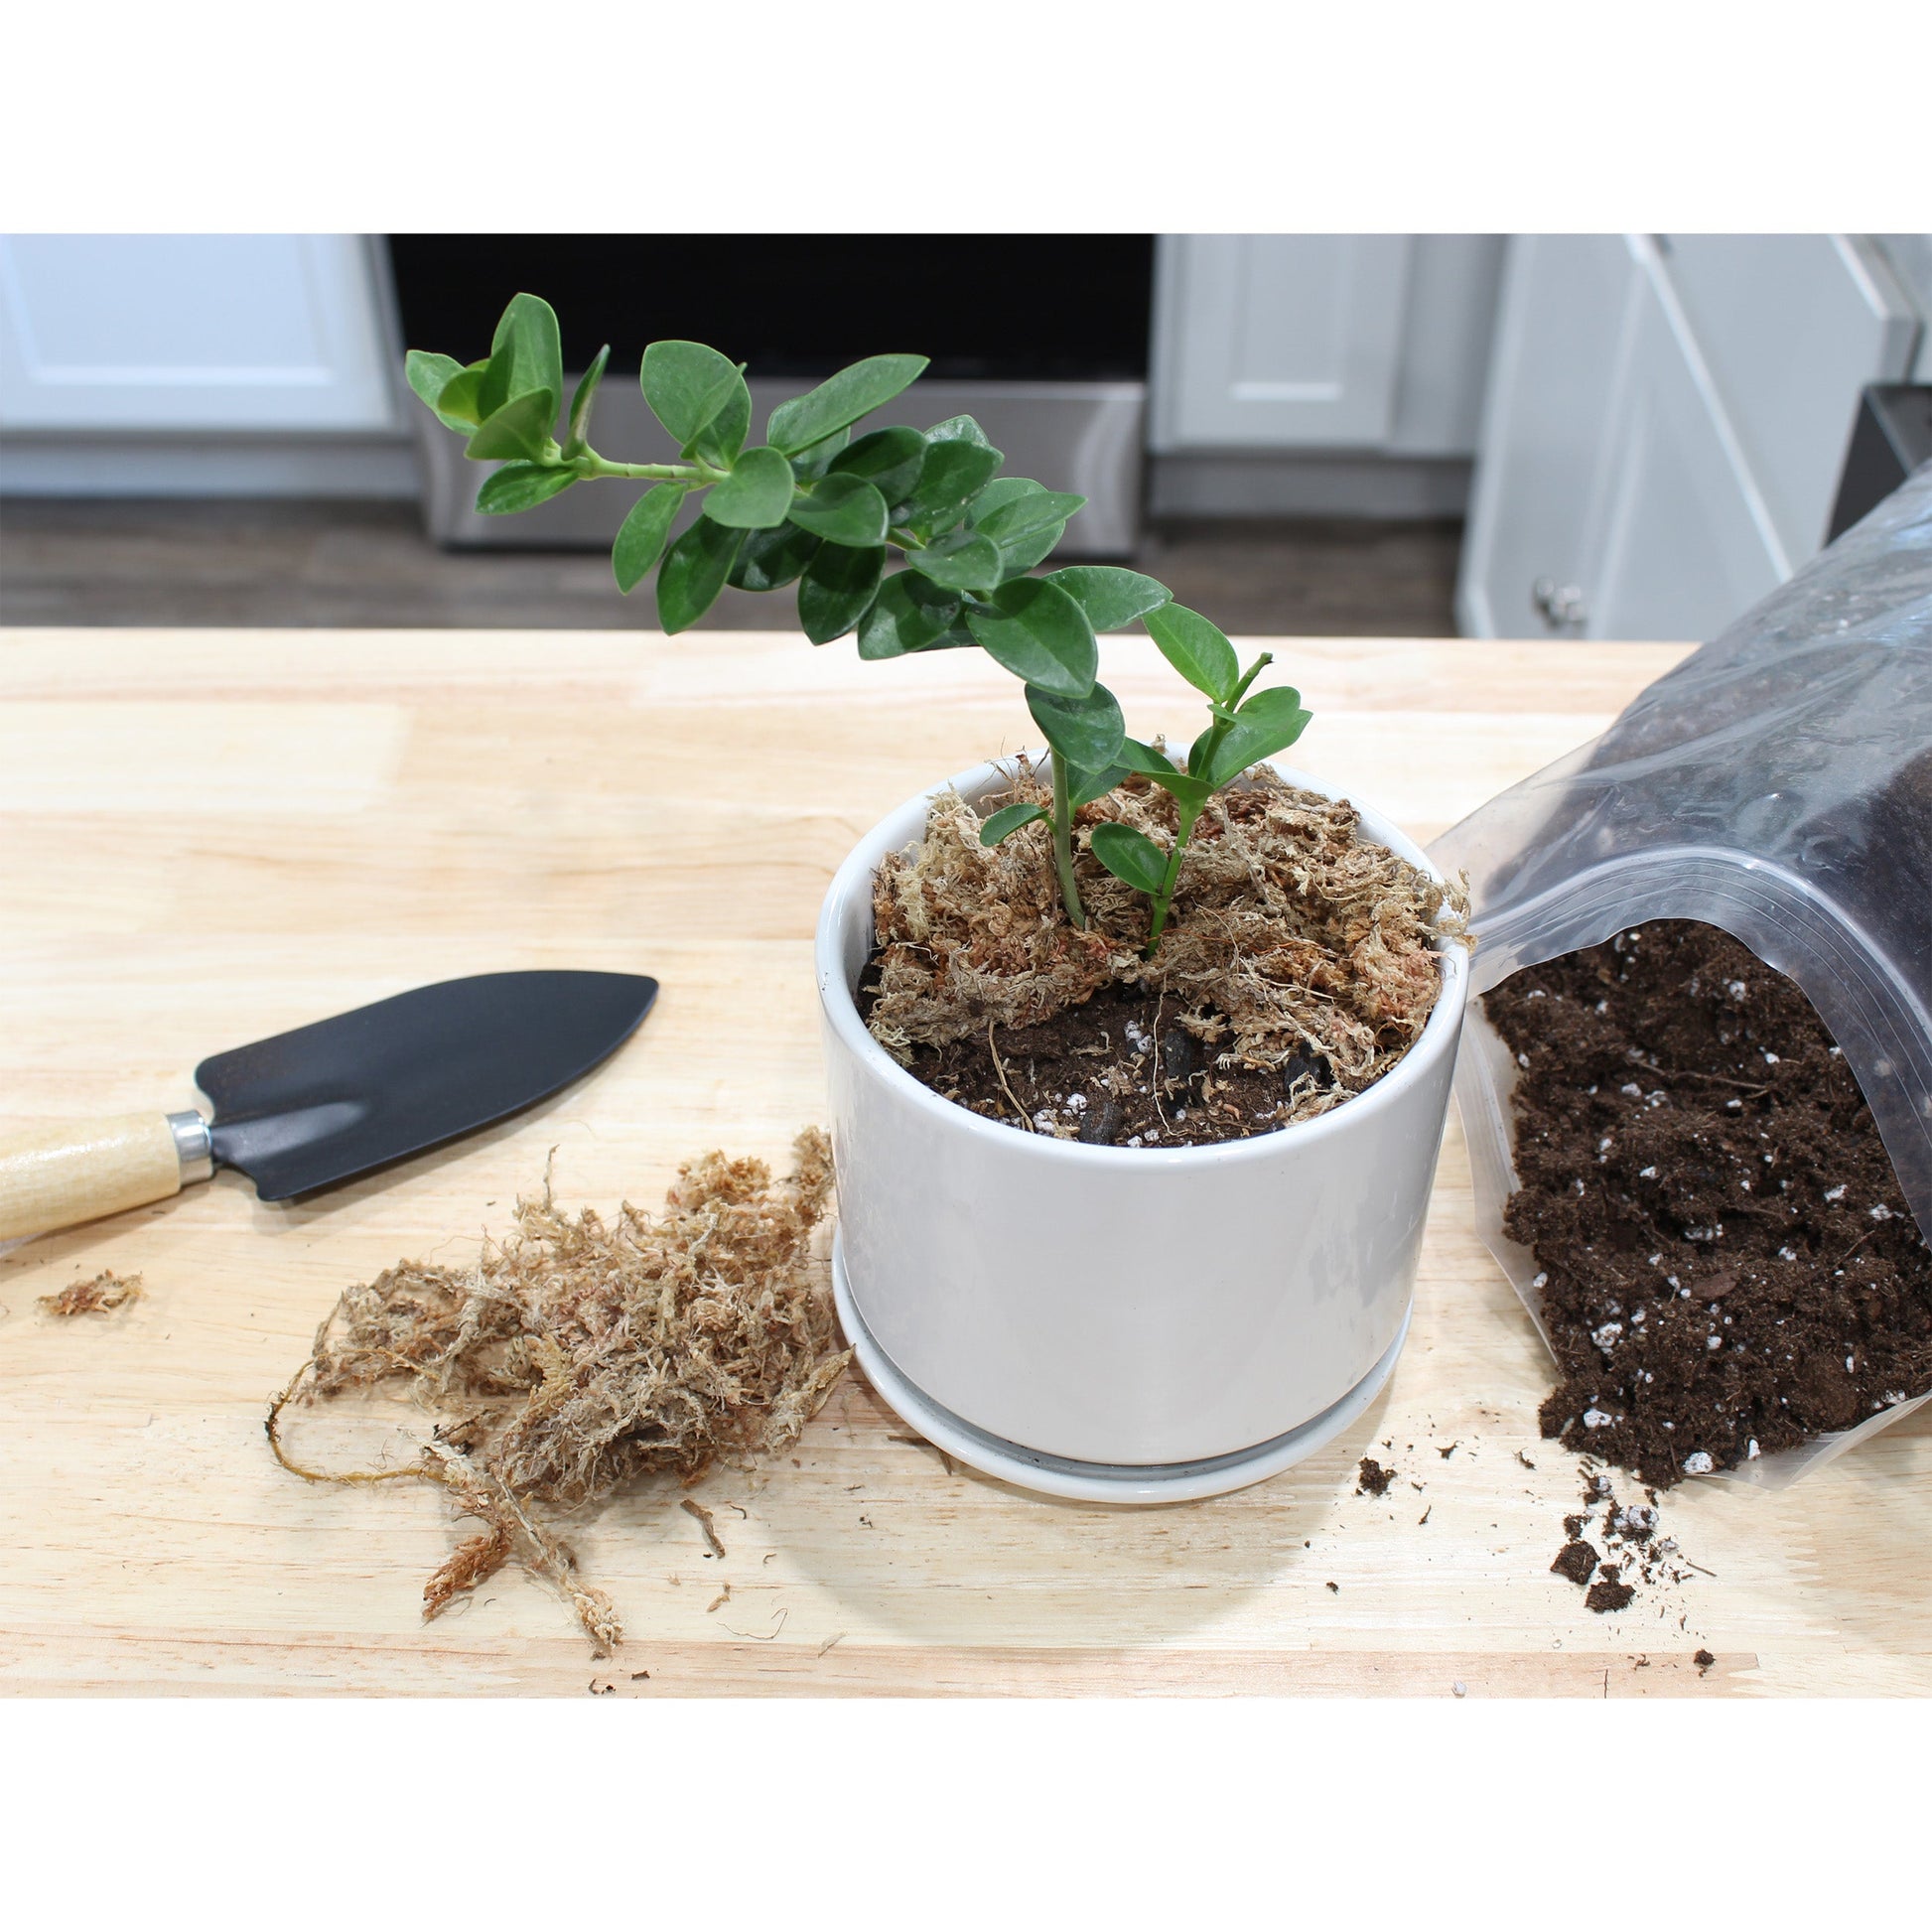 Hoya Plant Potting Soil Mix (8 Quarts) - SSKIT224